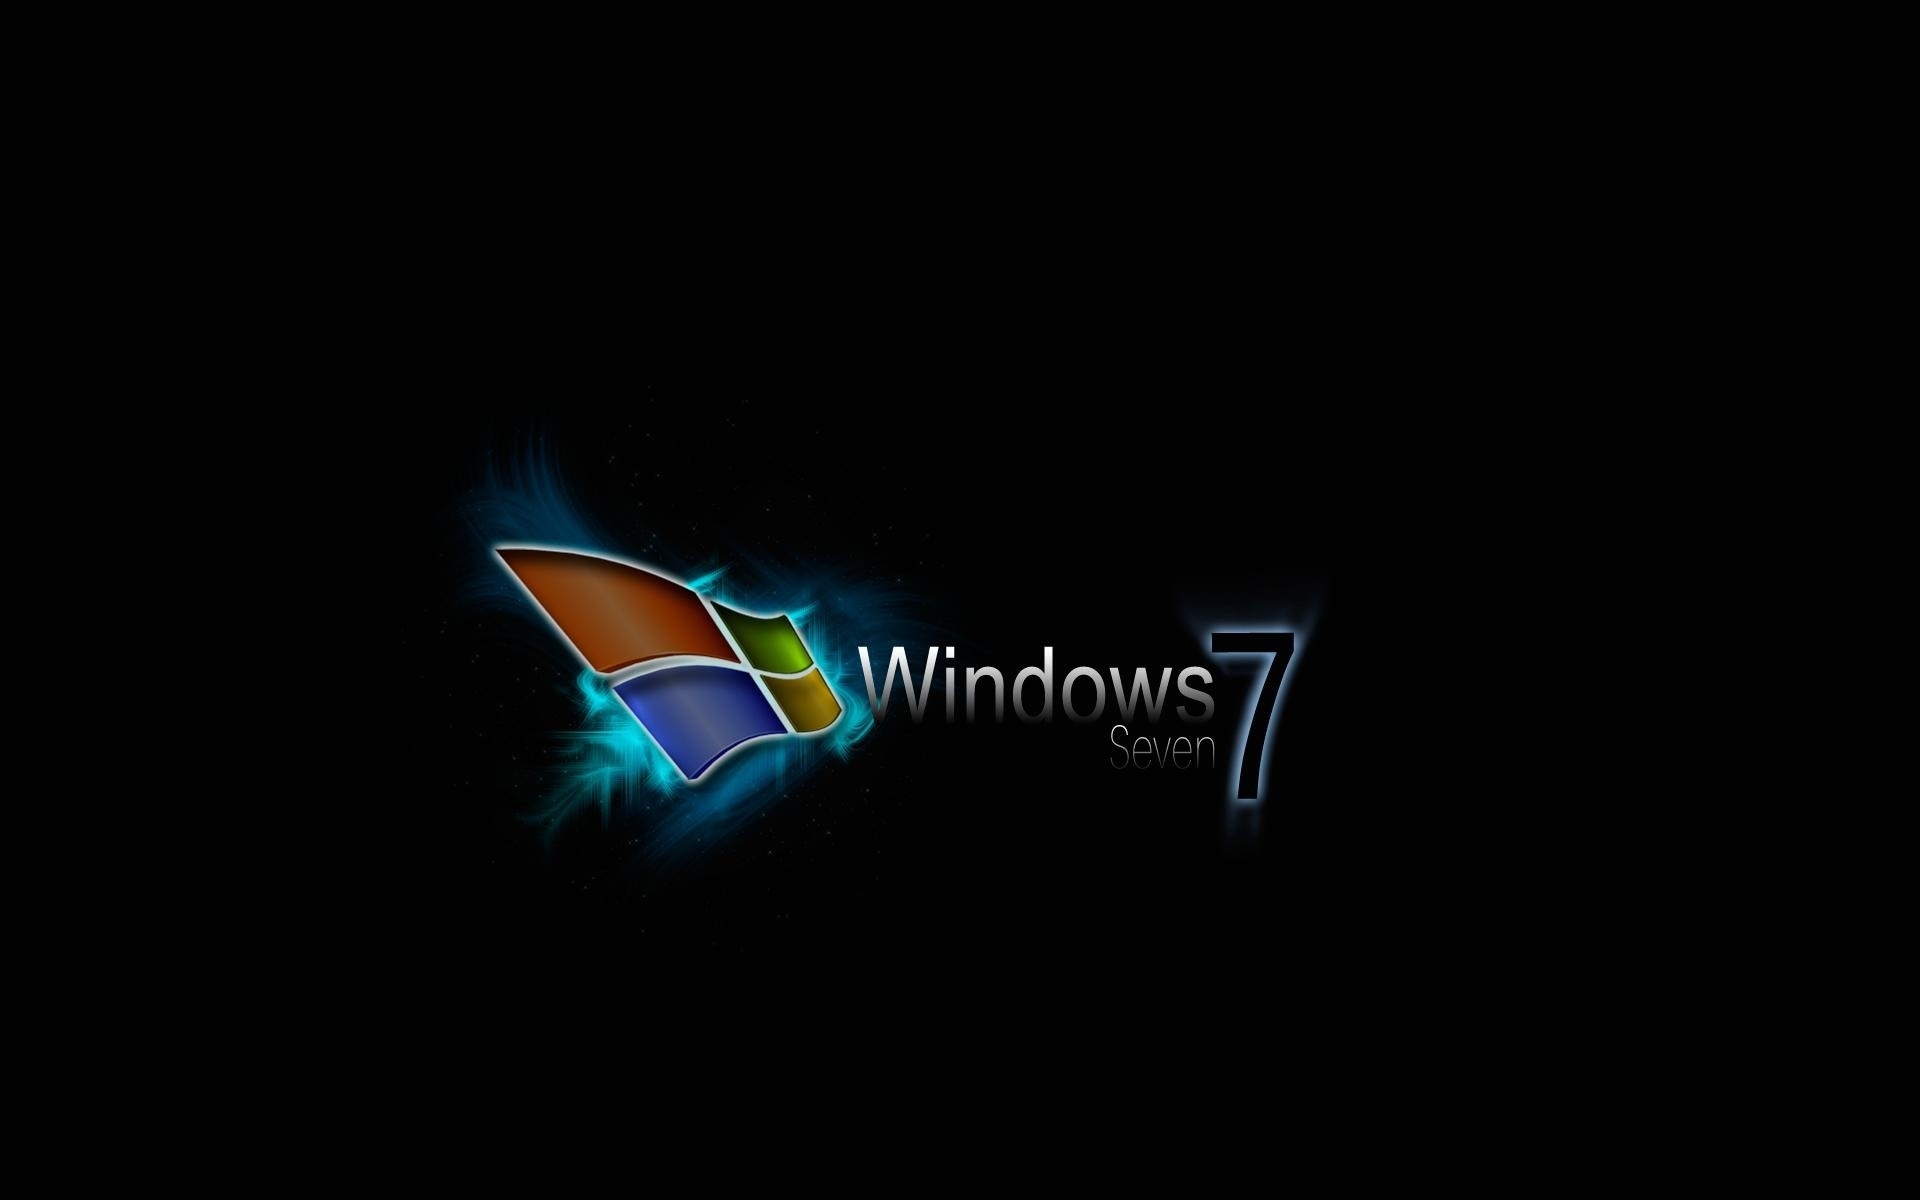 Best Windows 7 for 1920 x 1200 widescreen resolution